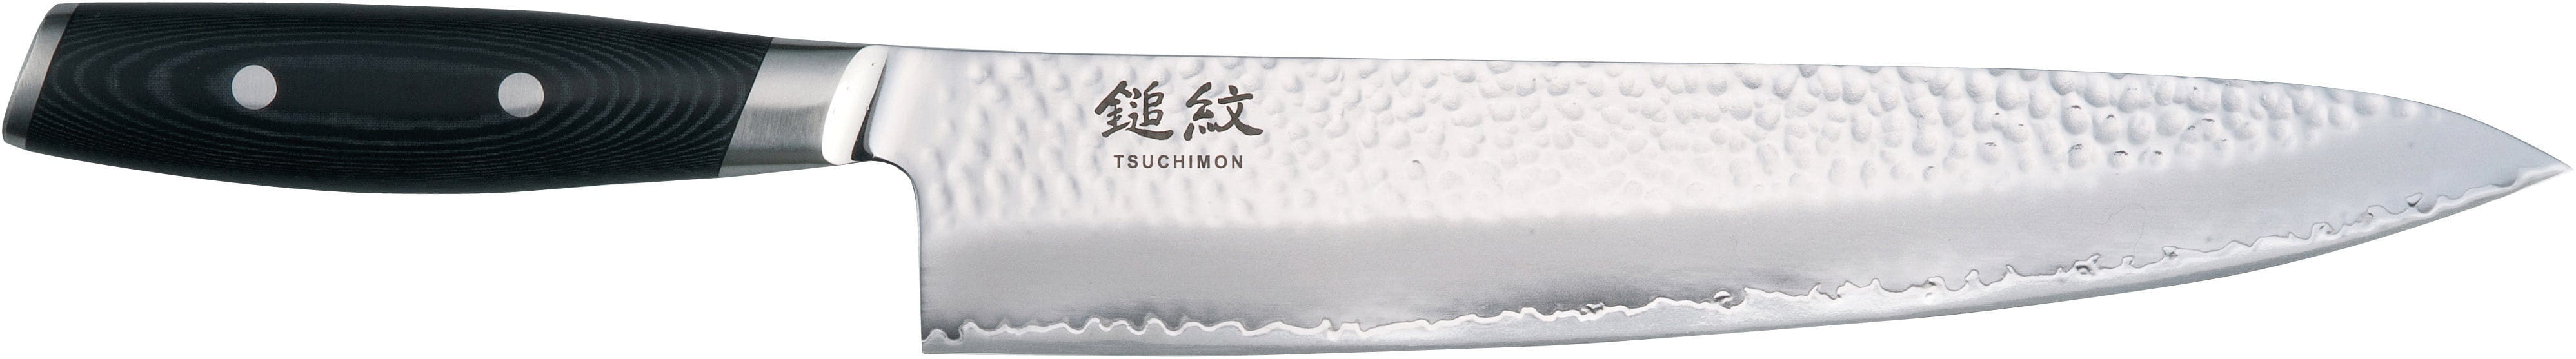 Yaxell Tsuchimon Chefův nůž, 25,5 cm